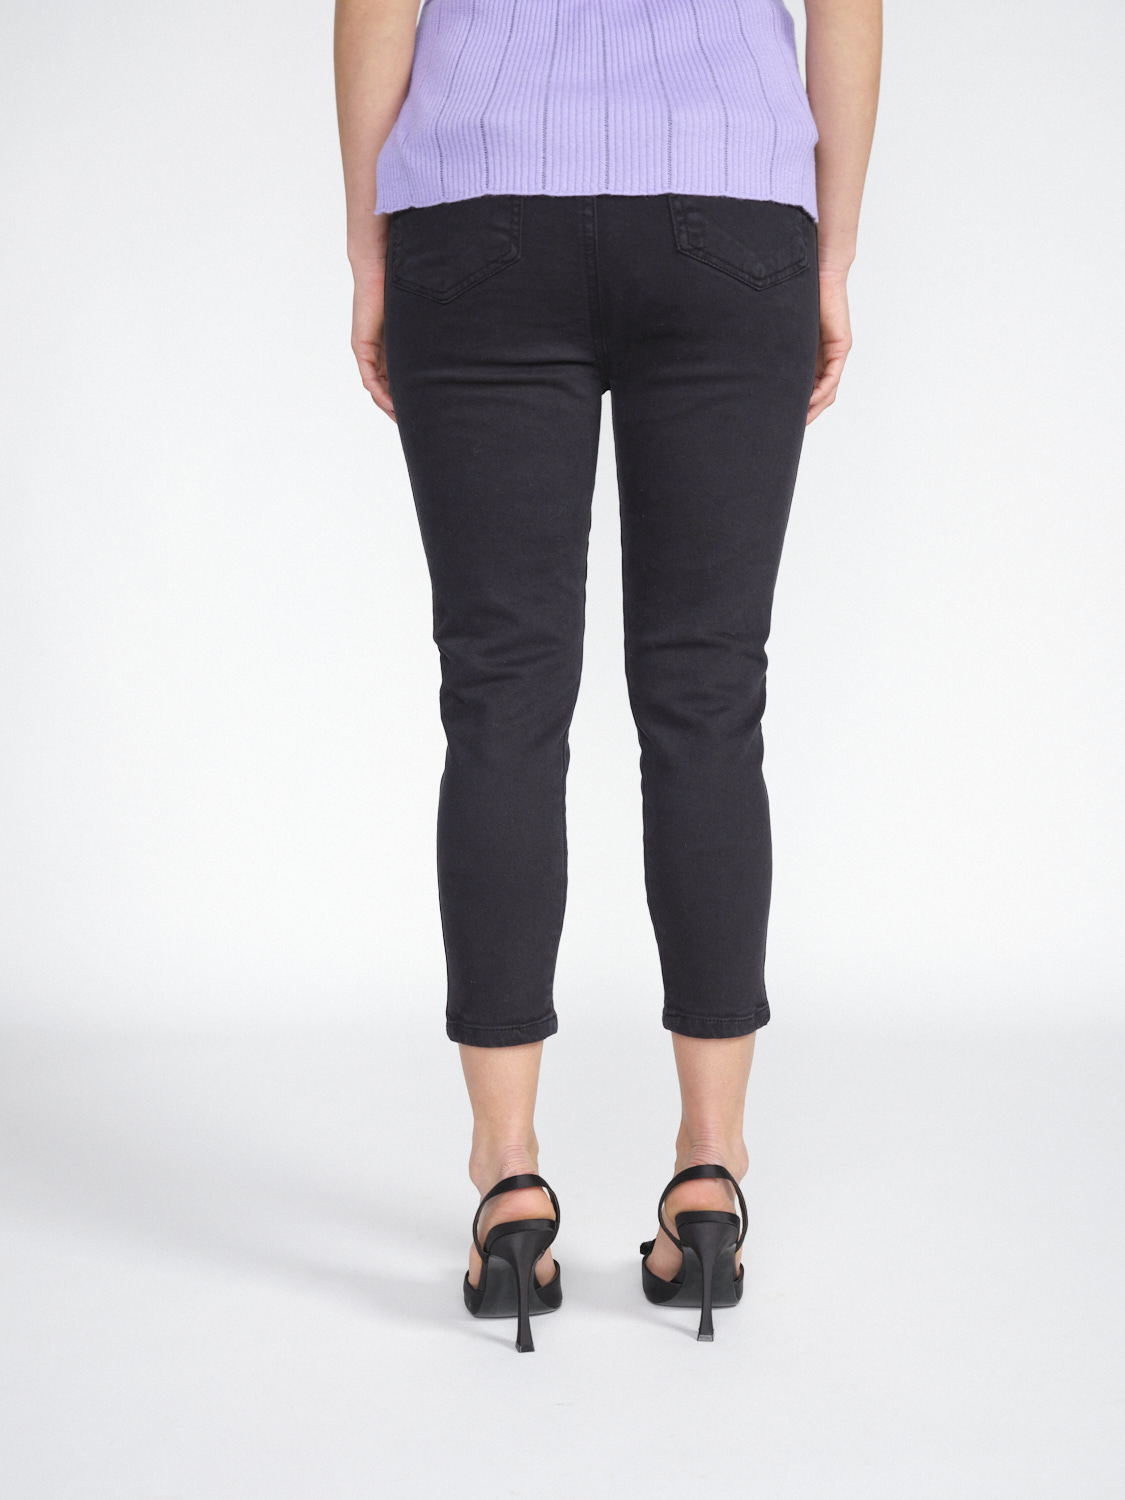 Gitta Banko Pantalones Harlow -pantalones tres cuartos de algodón elástico   negro XS/S